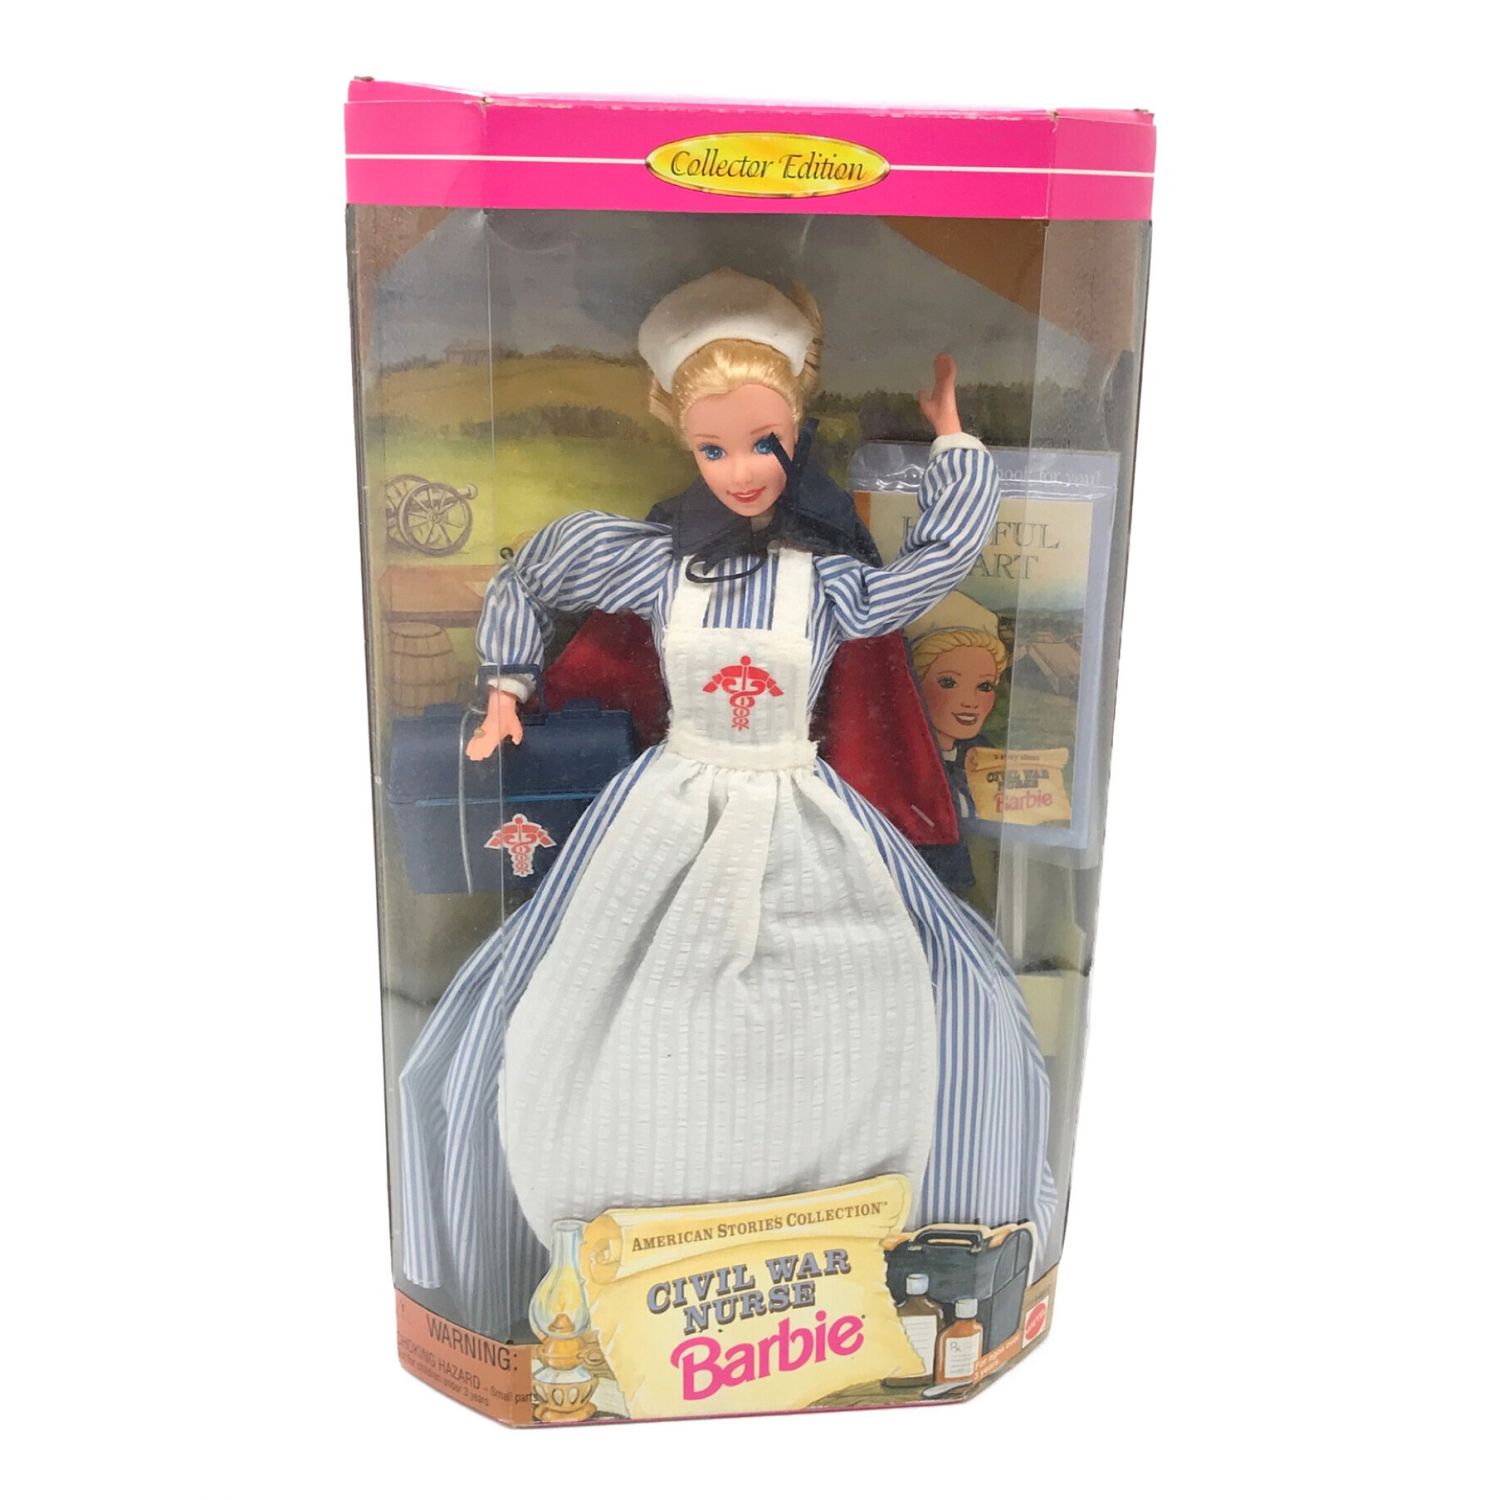 バービー人形 CIVIL WAR Barbie AMERICAN STORY COLLECTION